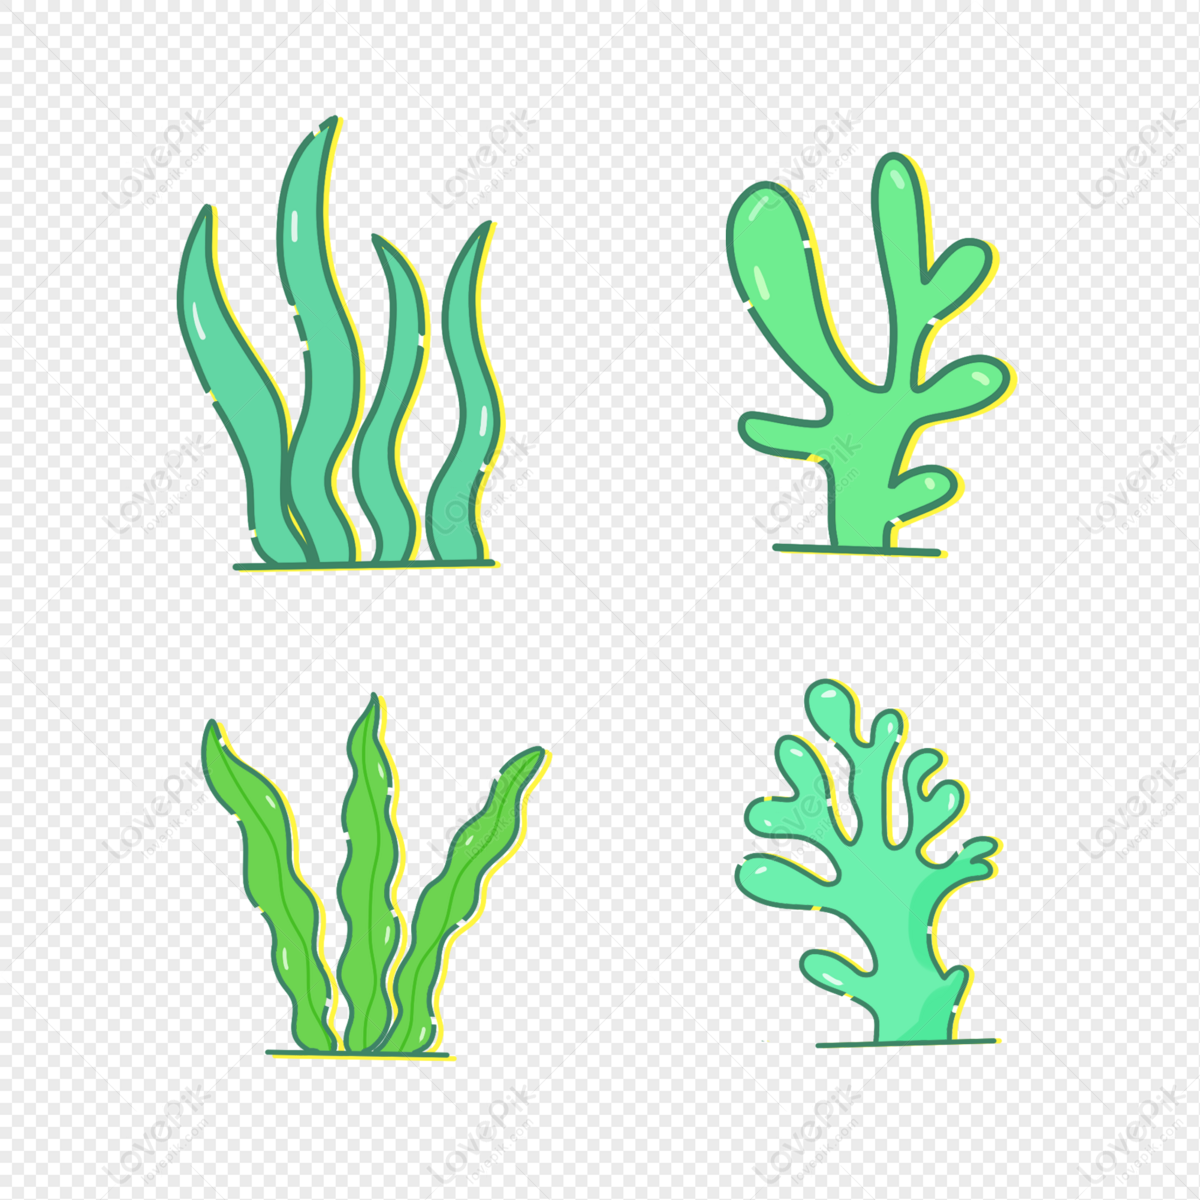 Seaweed: Rong biển luôn là một phần không thể thiếu trong cuộc sống của chúng ta, chúng tôi gửi đến bạn một bức ảnh về loại rong biển đó là seaweed. Hãy cùng chiêm ngưỡng sự độc đáo của loại rong biển này, bức ảnh sẽ khiến bạn cảm thấy mình như đang chìm đắm trong một đại dương xanh ngắt.